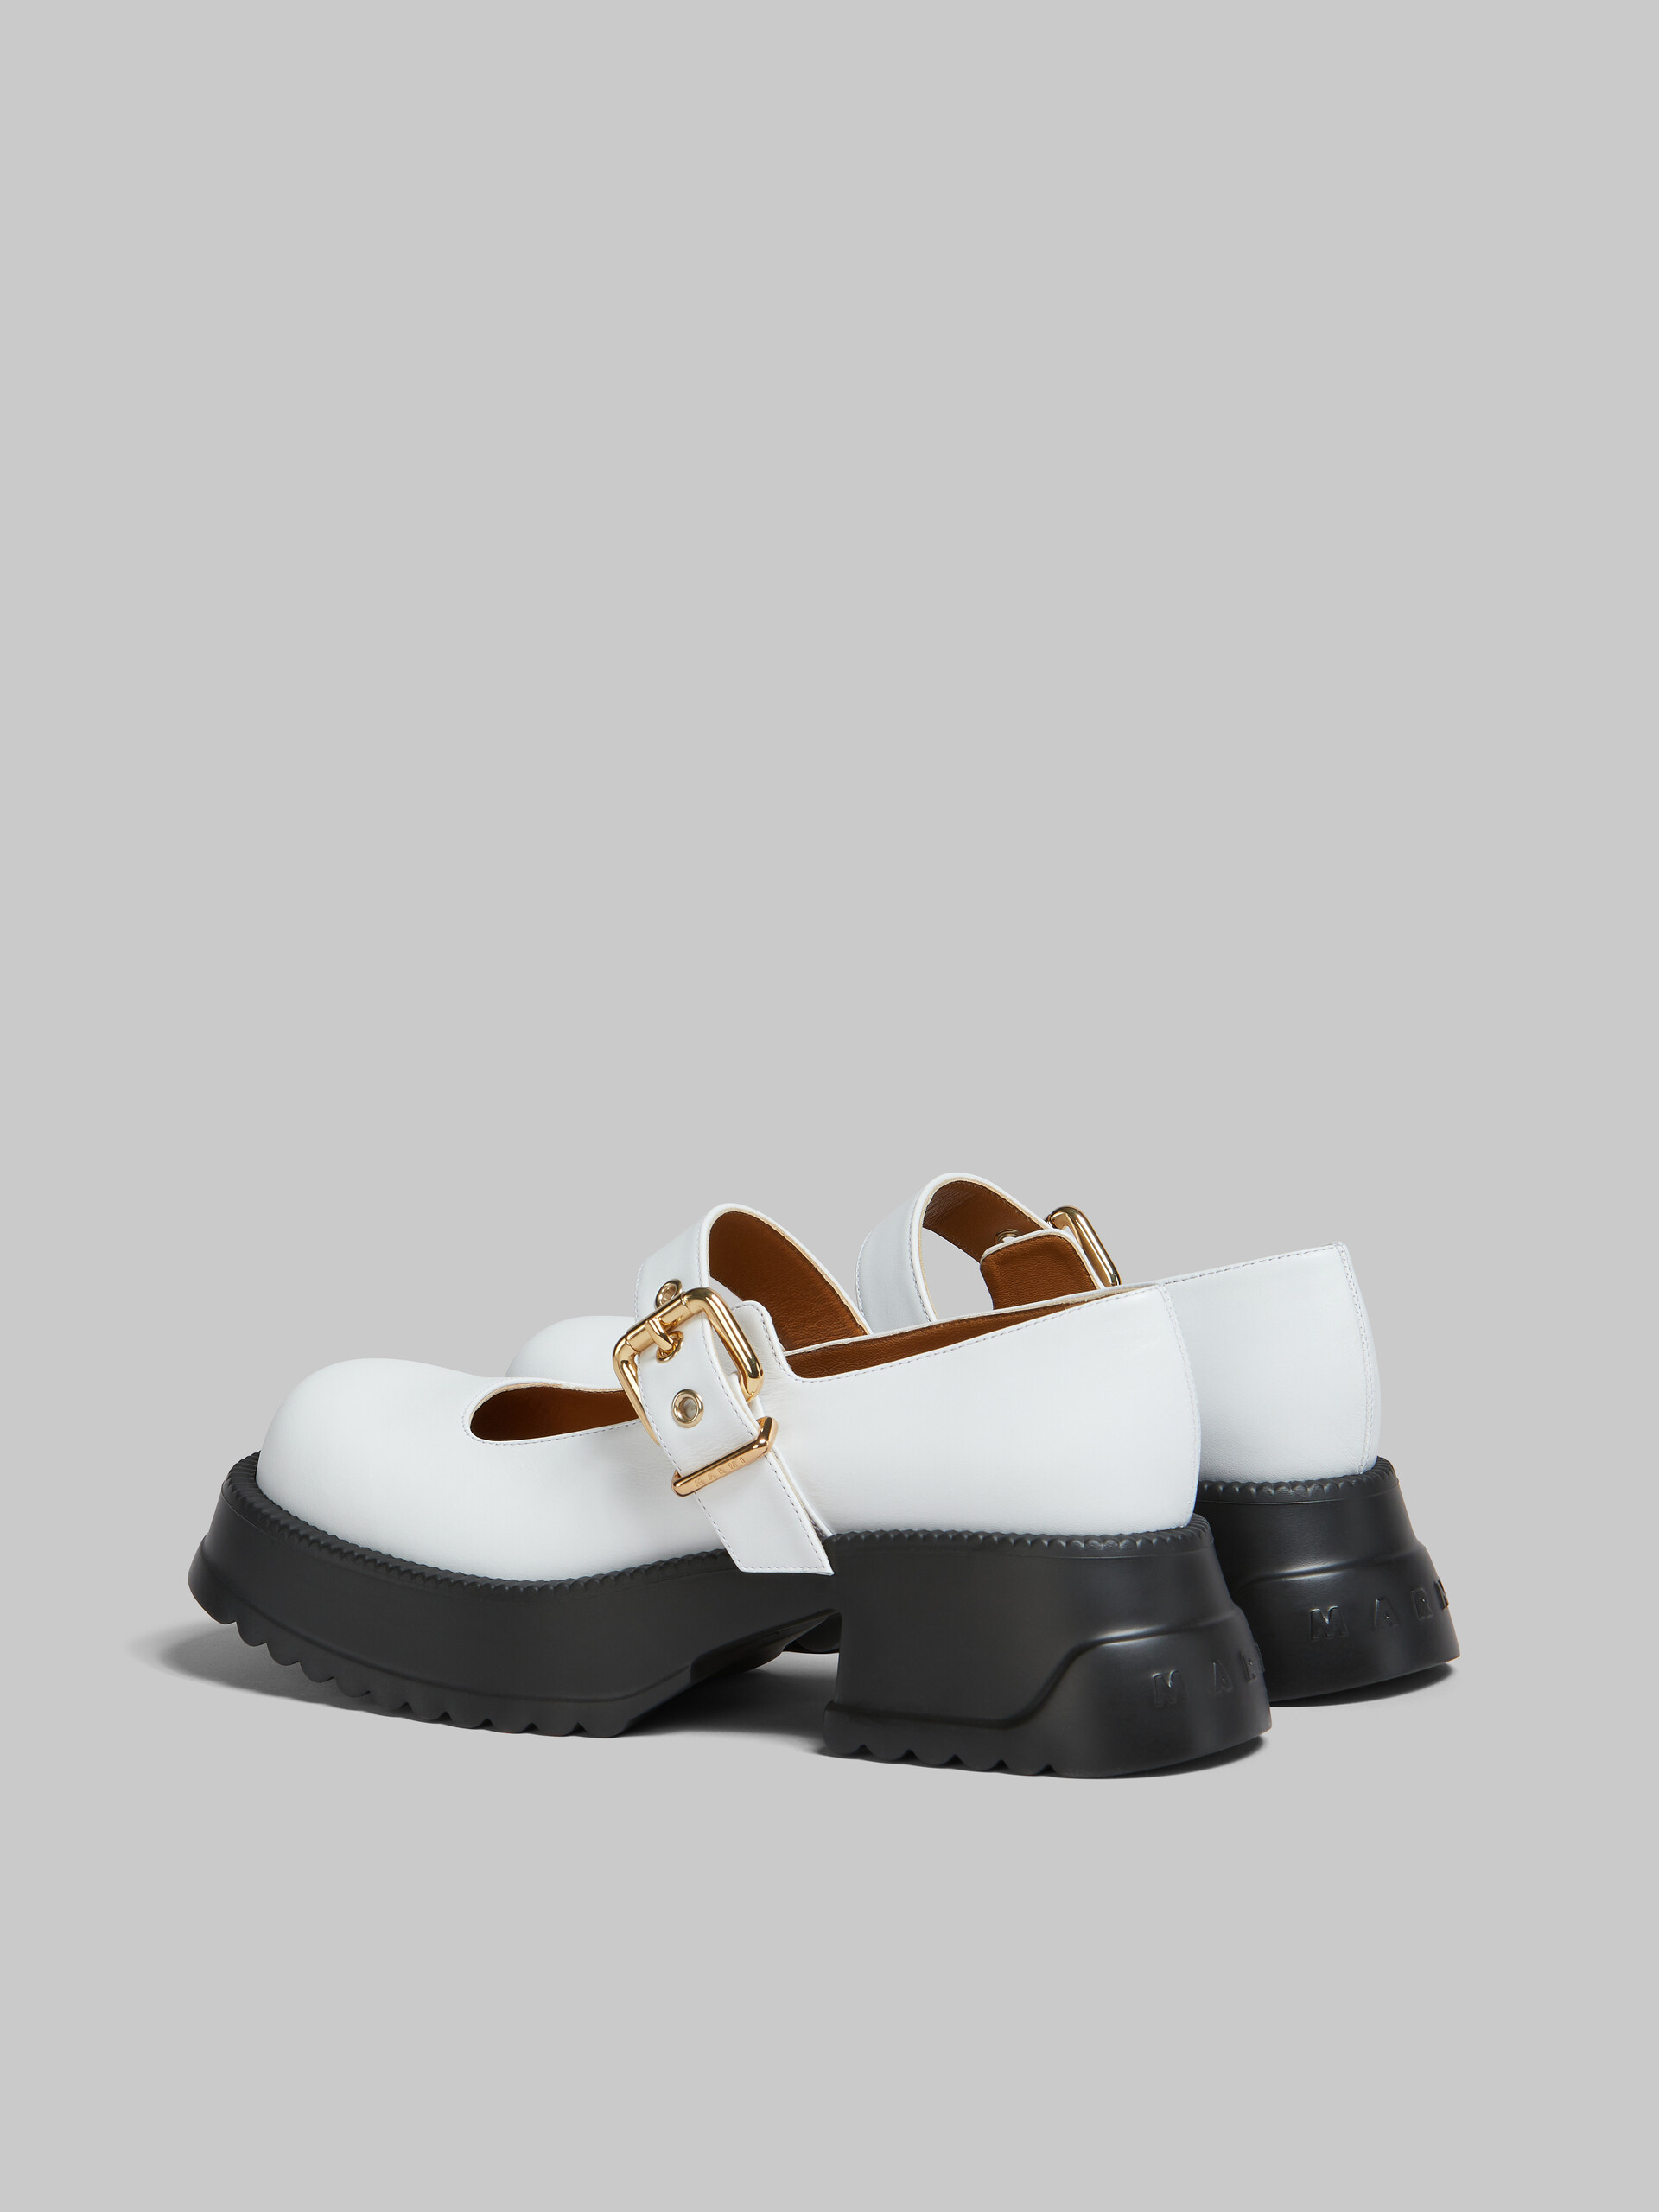 Chaussures Mary Jane en cuir noir avec semelle à plateforme - Sneakers - Image 3